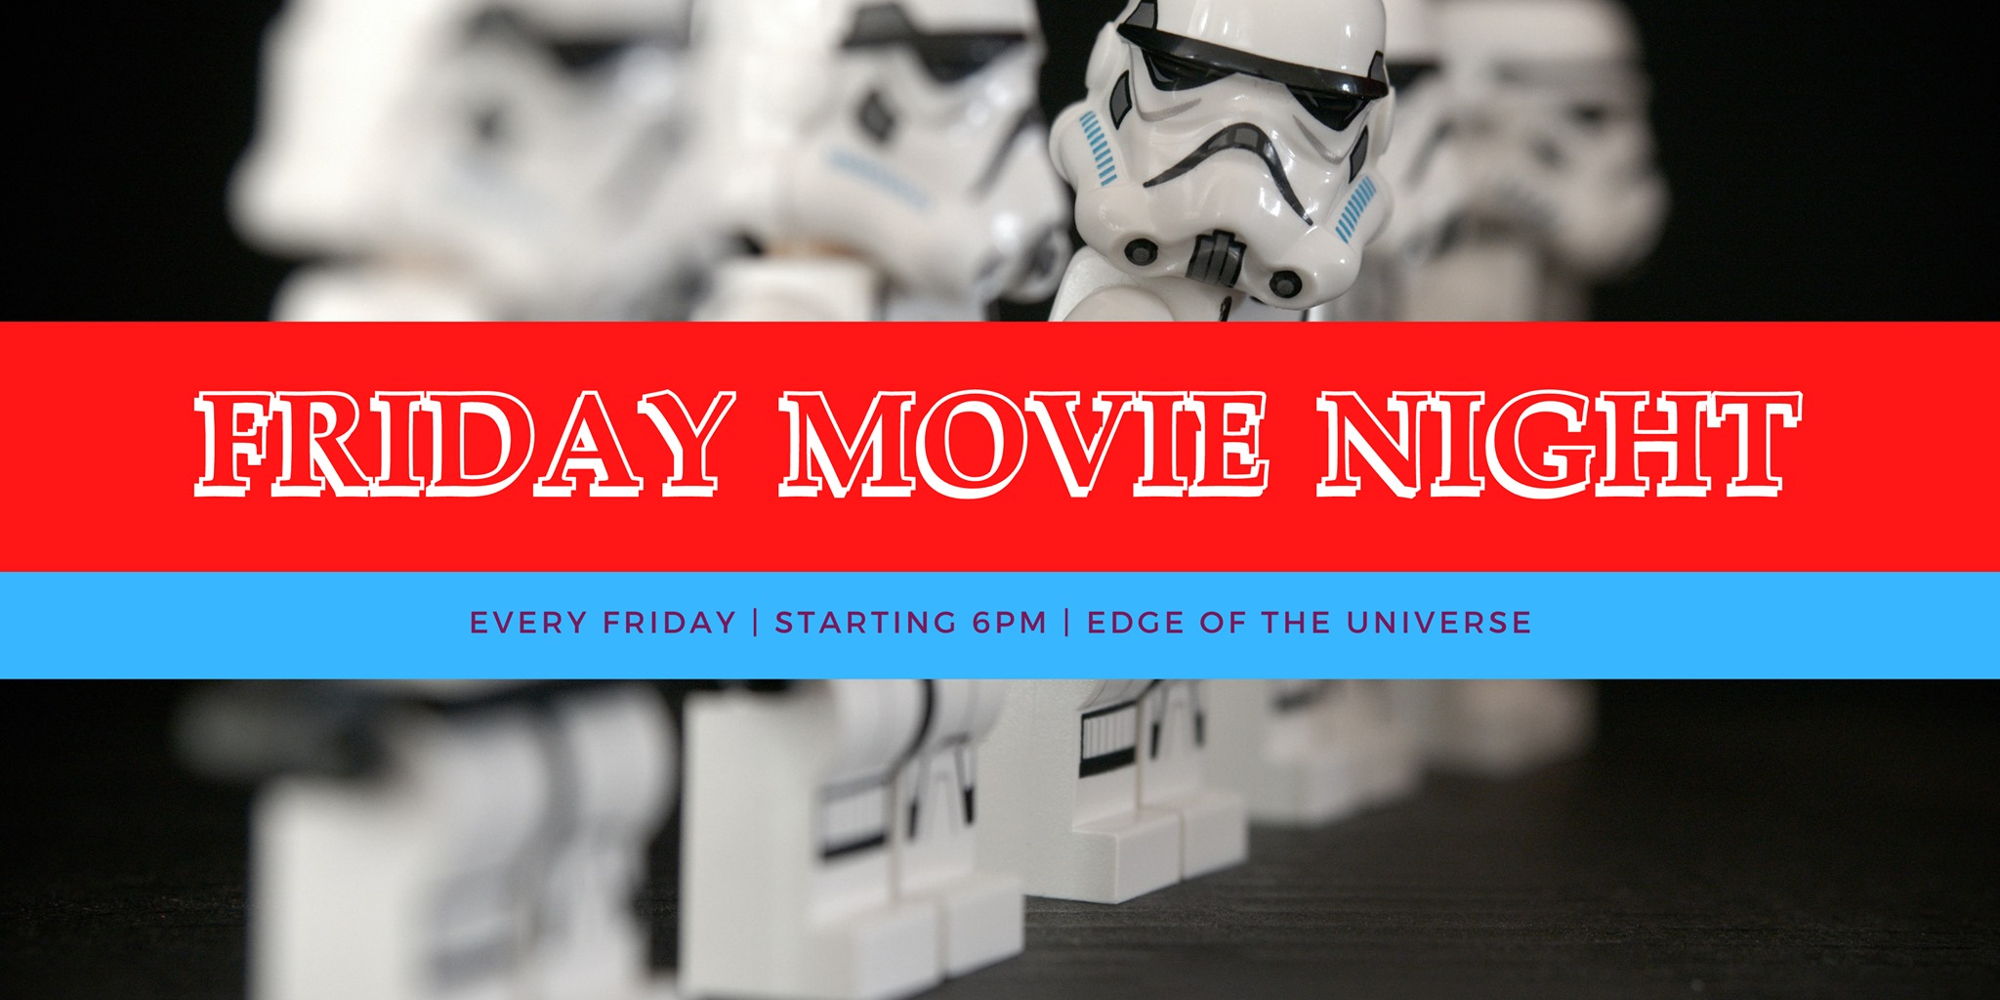 Friday Movie Night promotional image